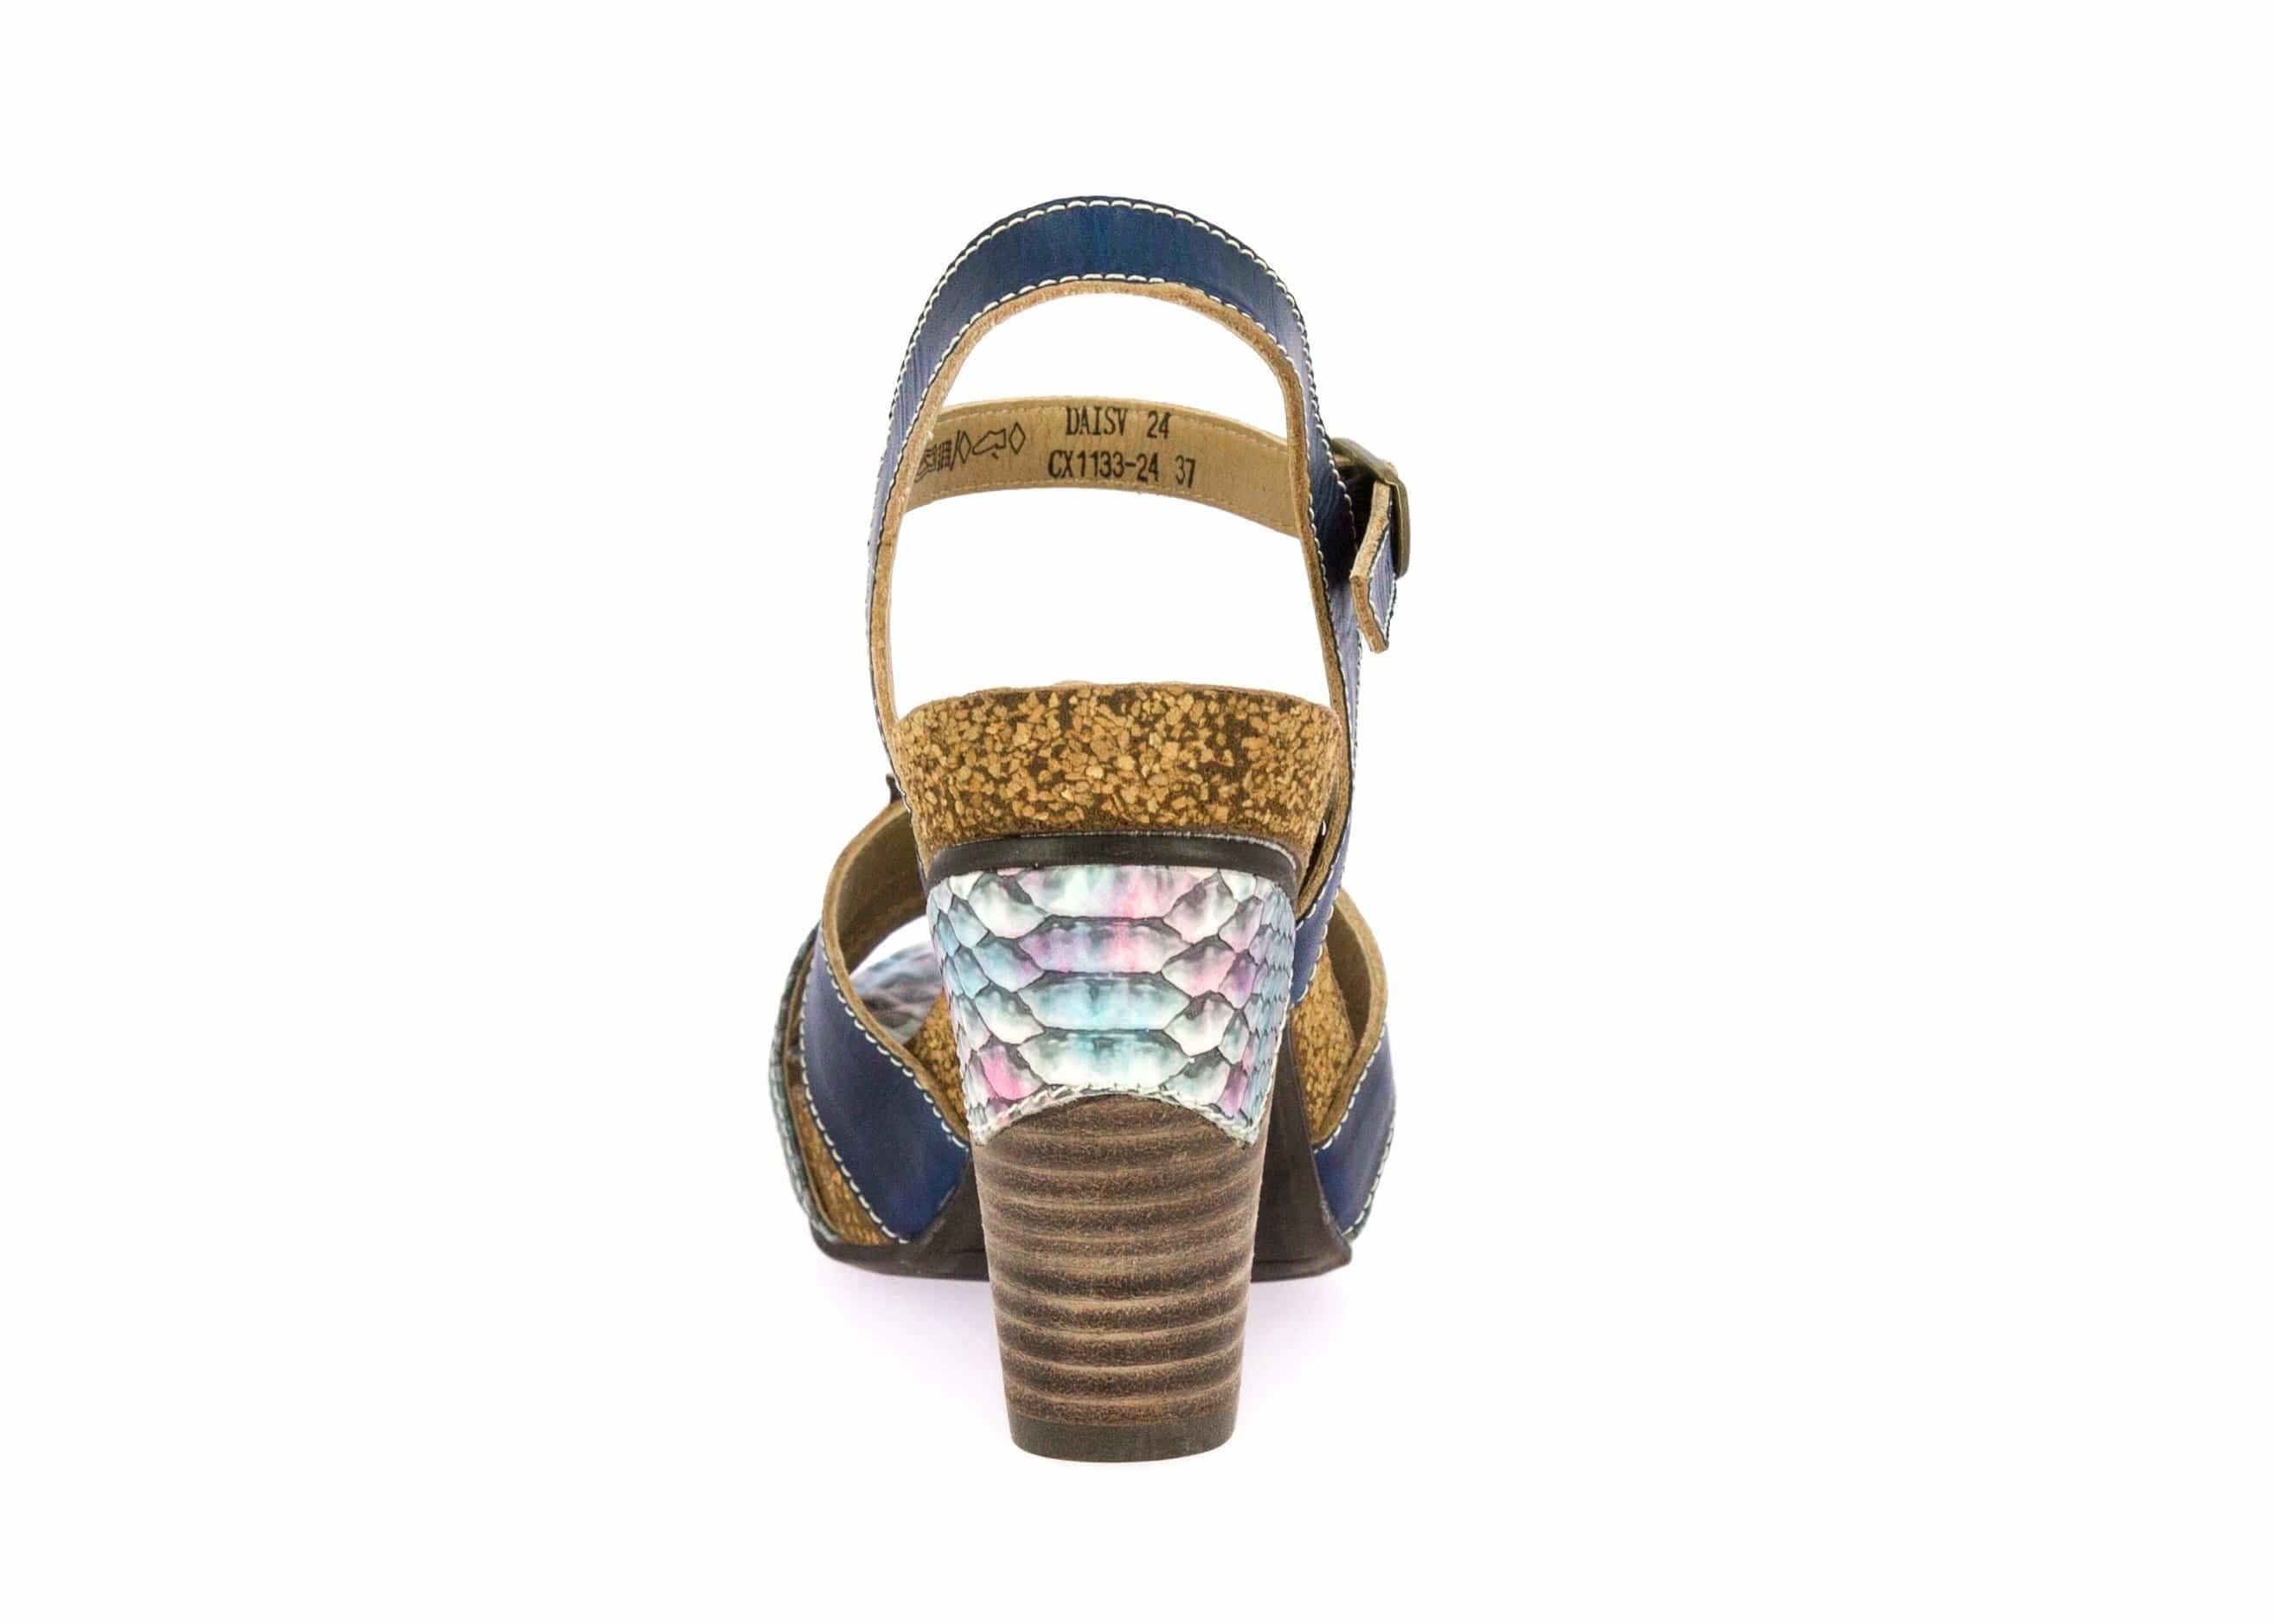 Shoe DACISYO24 - Sandal